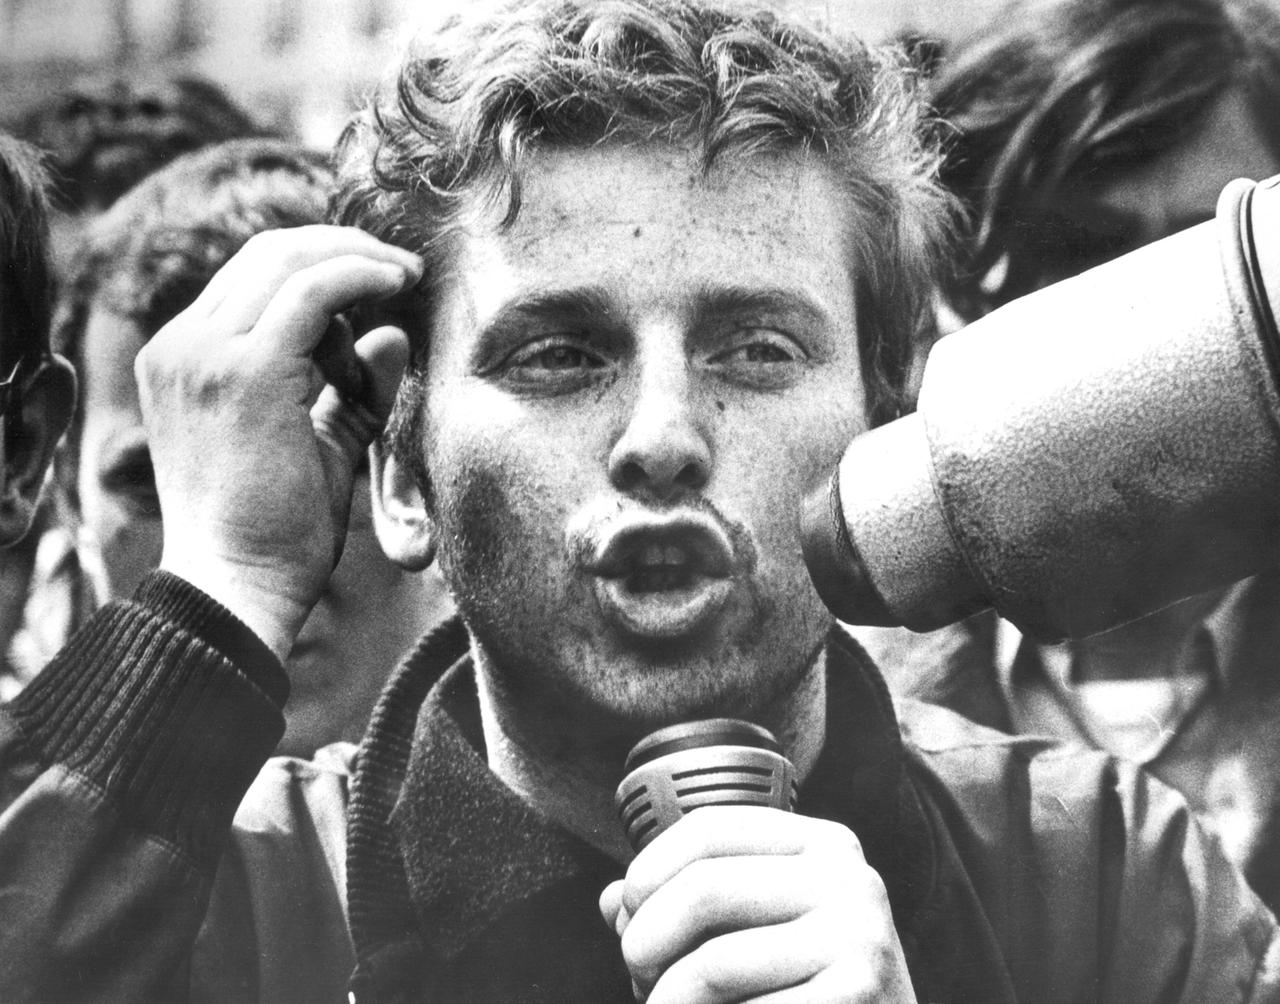 Daniel Cohn-Bendit als Studentenführer bei den Studentenunruhen 1968 in Paris